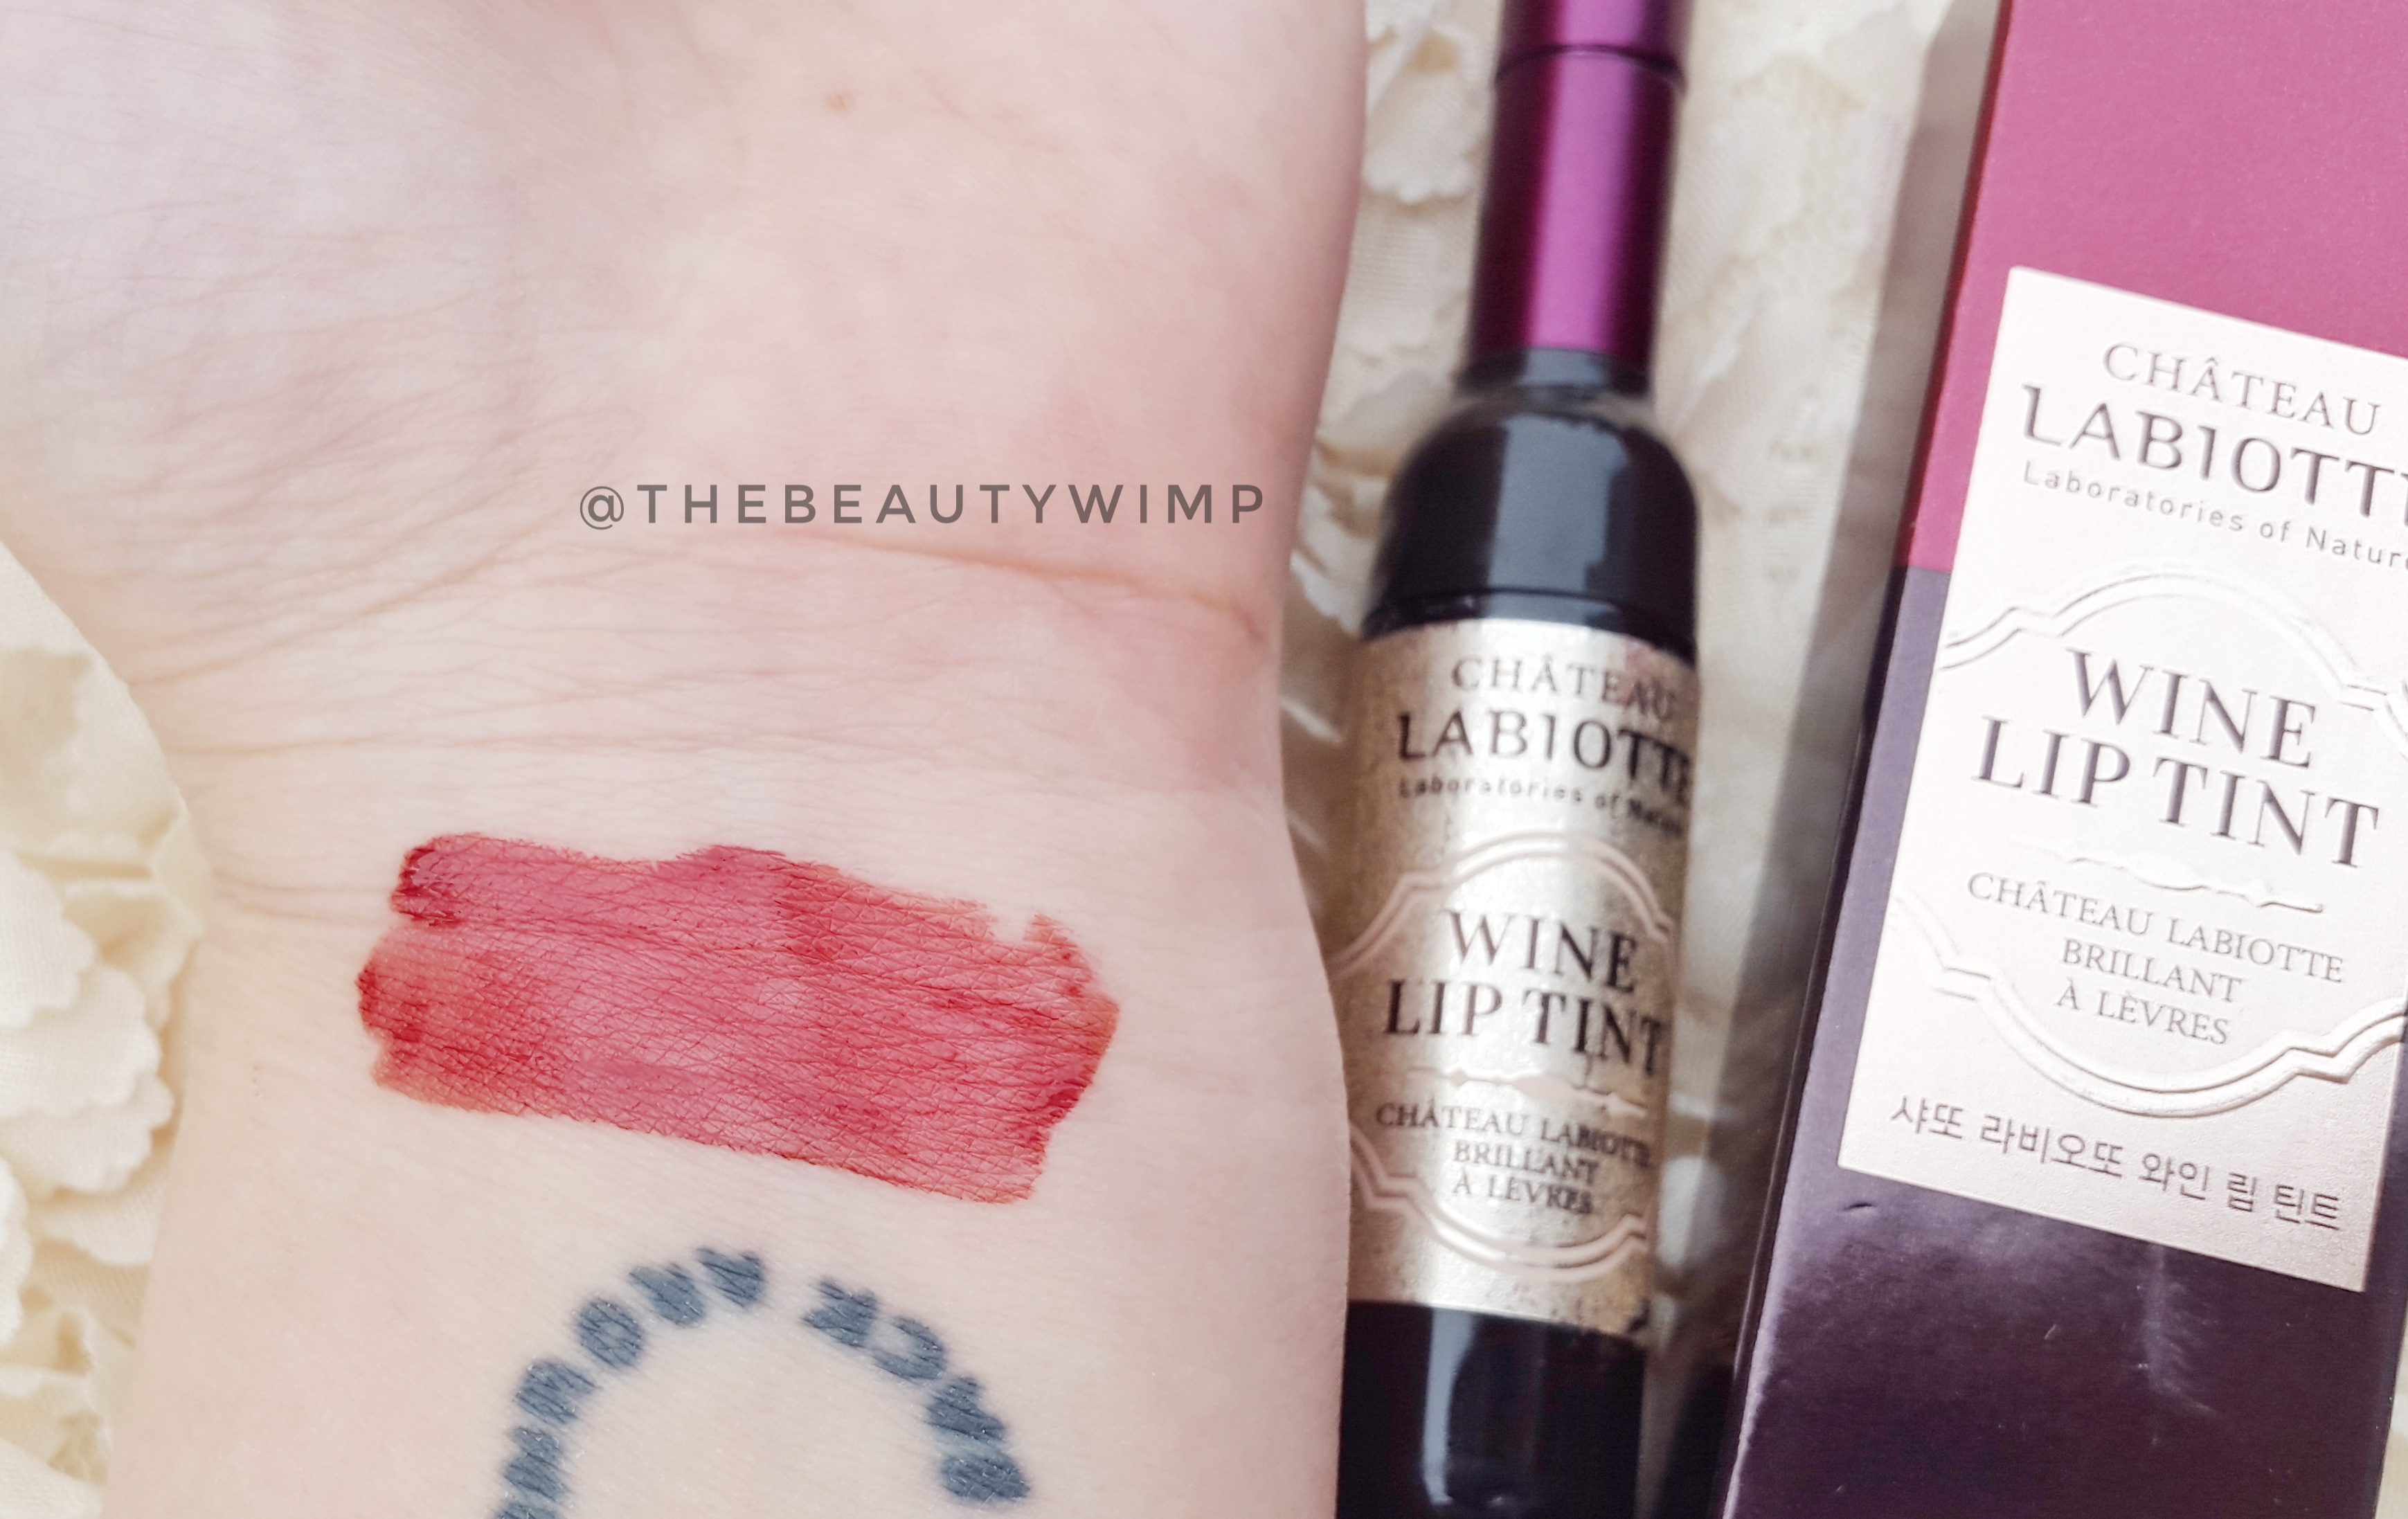 Chateau Labiotte Wine Lipstick.